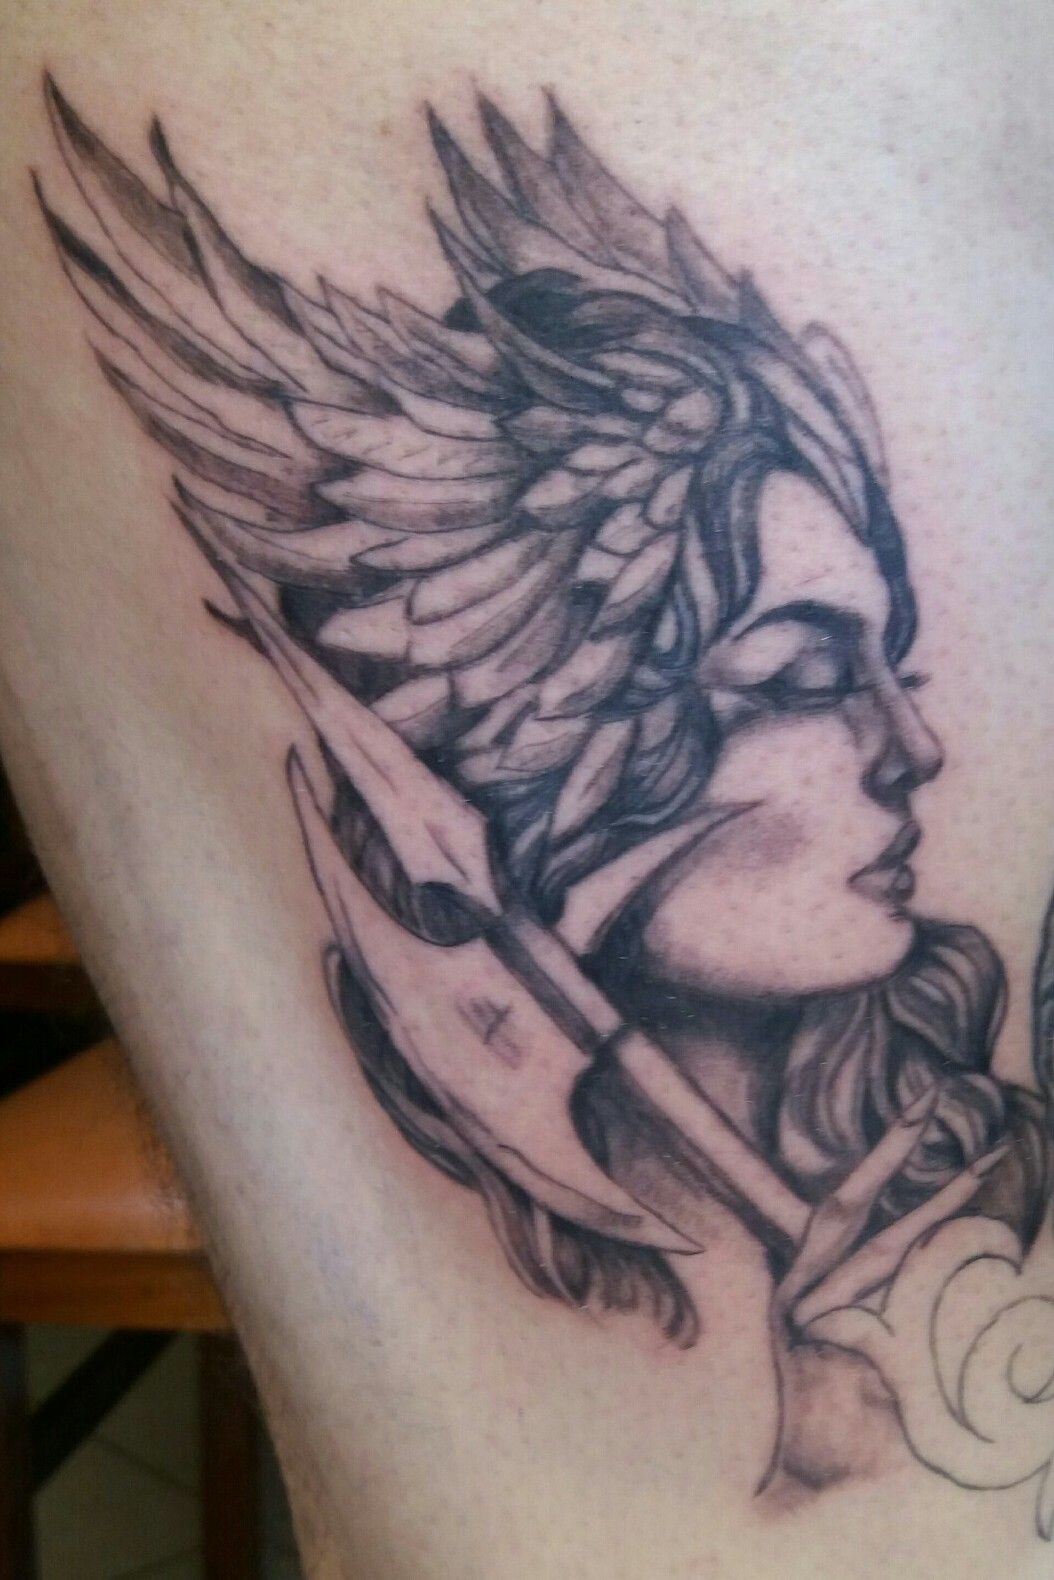 My lower arm tattoo Freya  Fenrir  rTattooDesigns